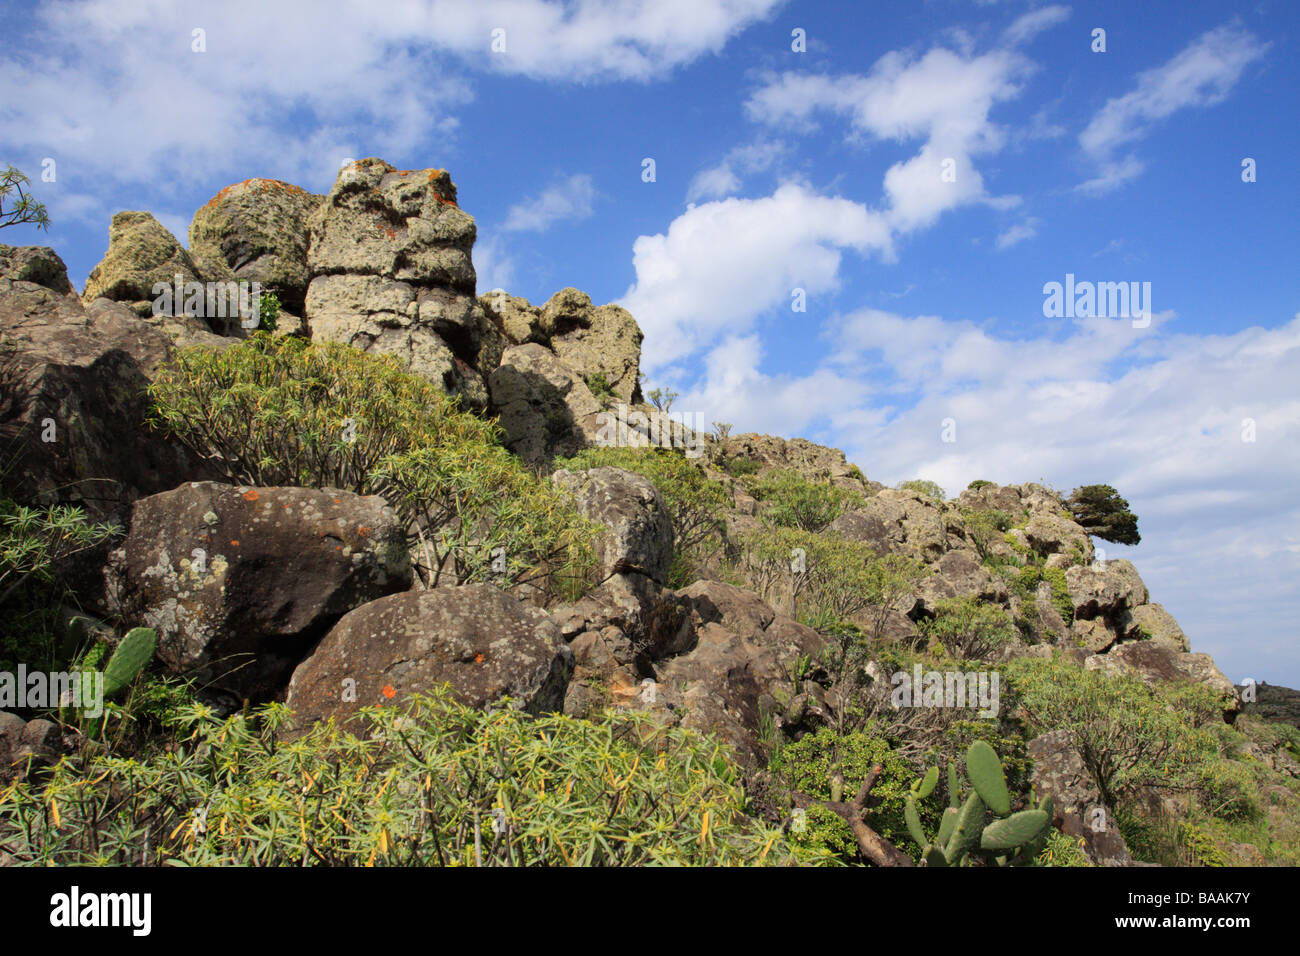 A ridge in the Majona Natural Reserve on La Gomera Stock Photo